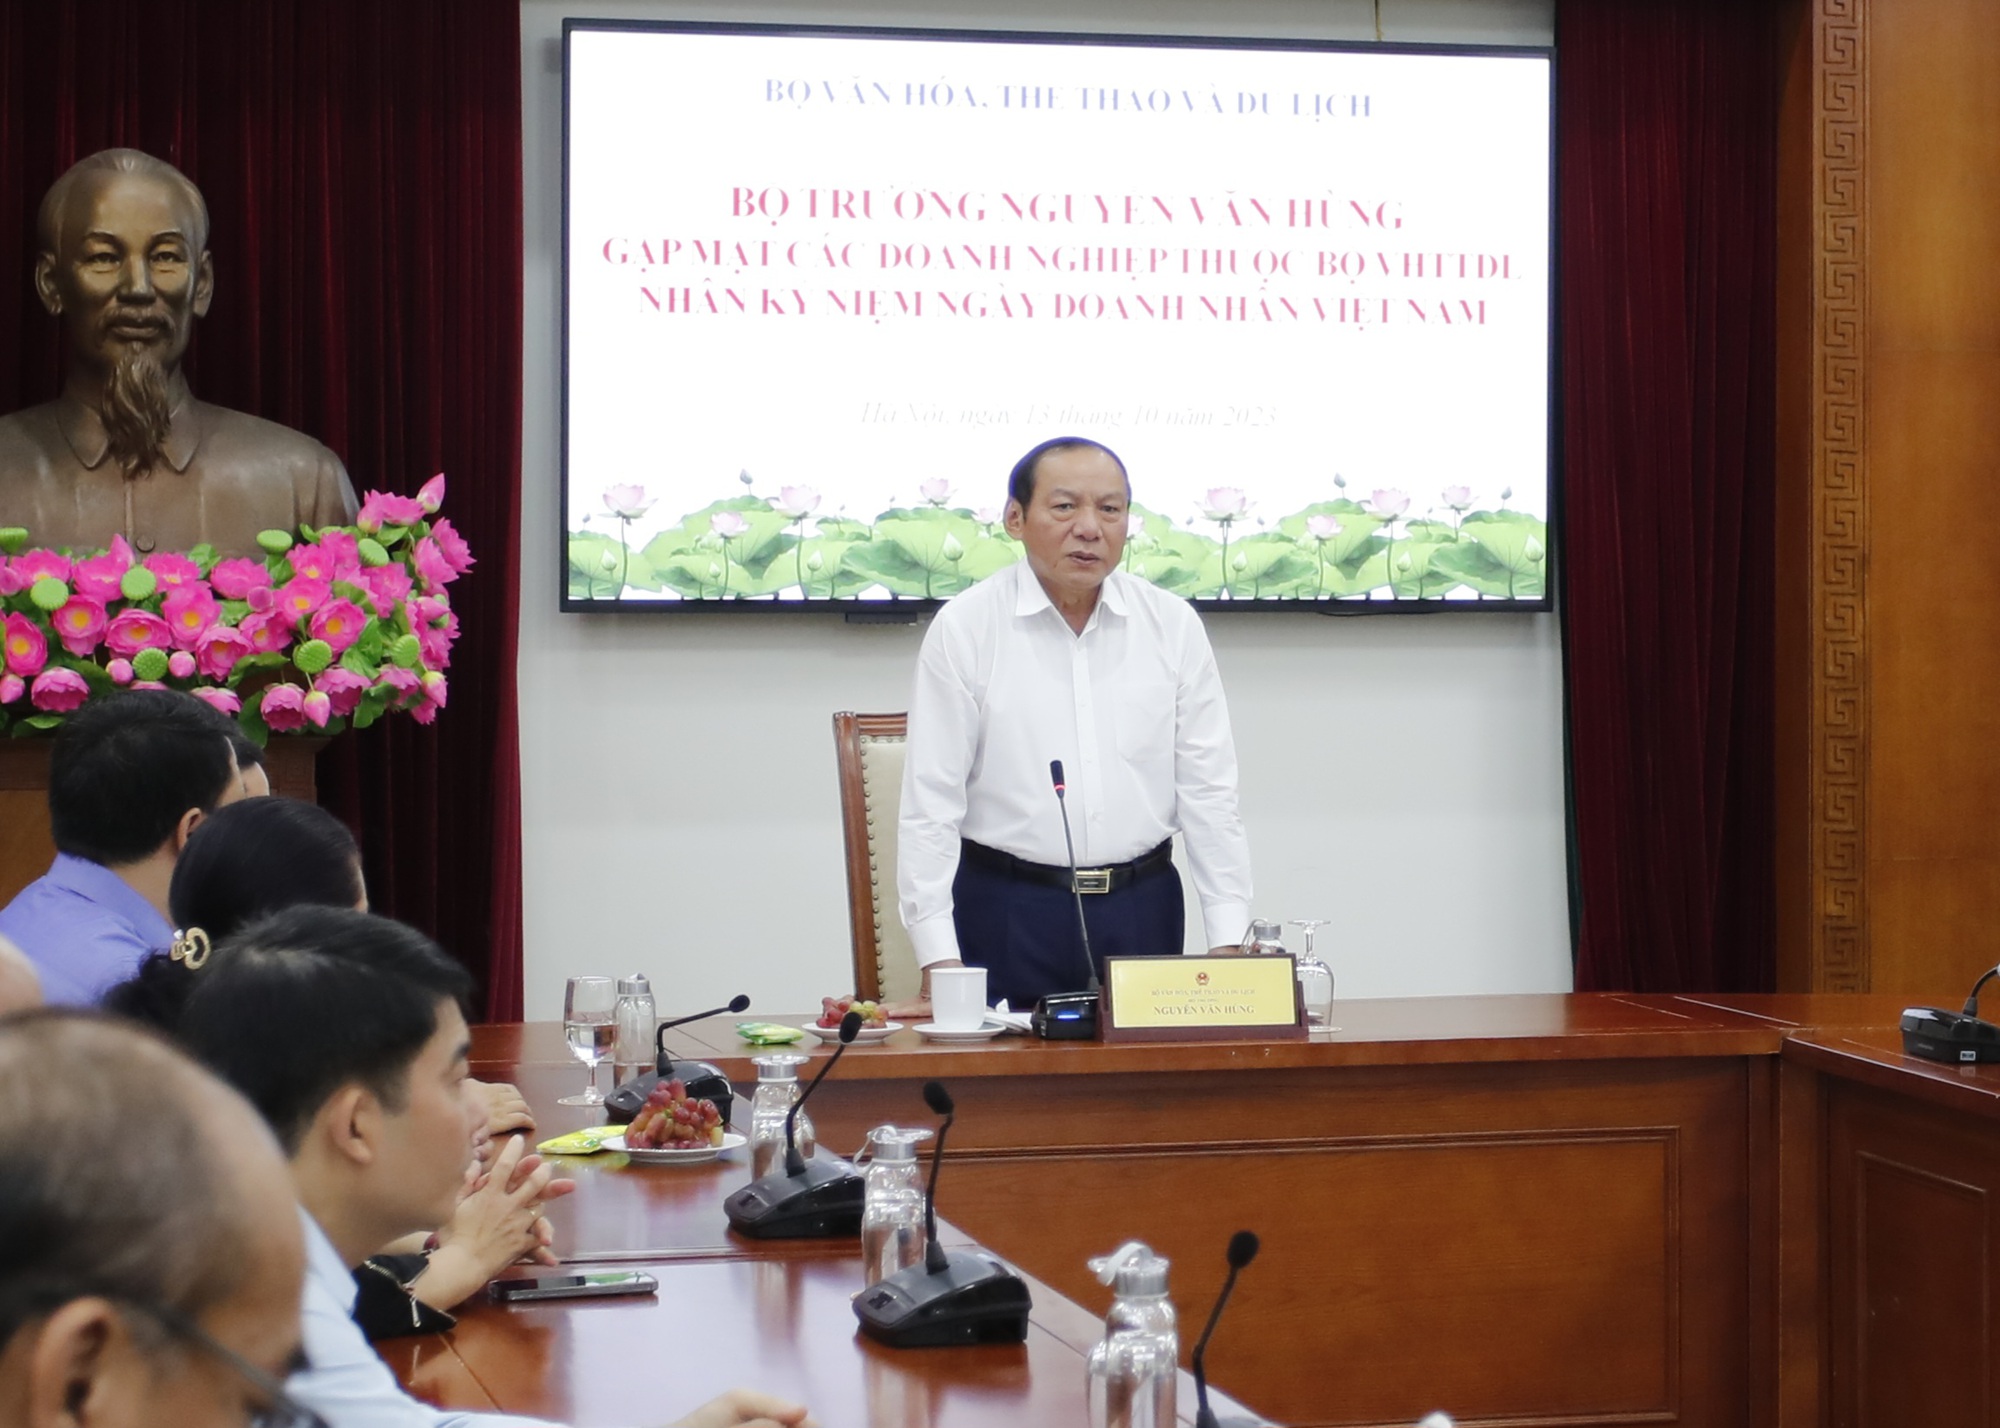 Bộ trưởng Nguyễn Văn Hùng: Doanh nghiệp thuộc Bộ VHTTDL phải có tầm nhìn, tư duy mới để kiến tạo và phát triển - Ảnh 2.